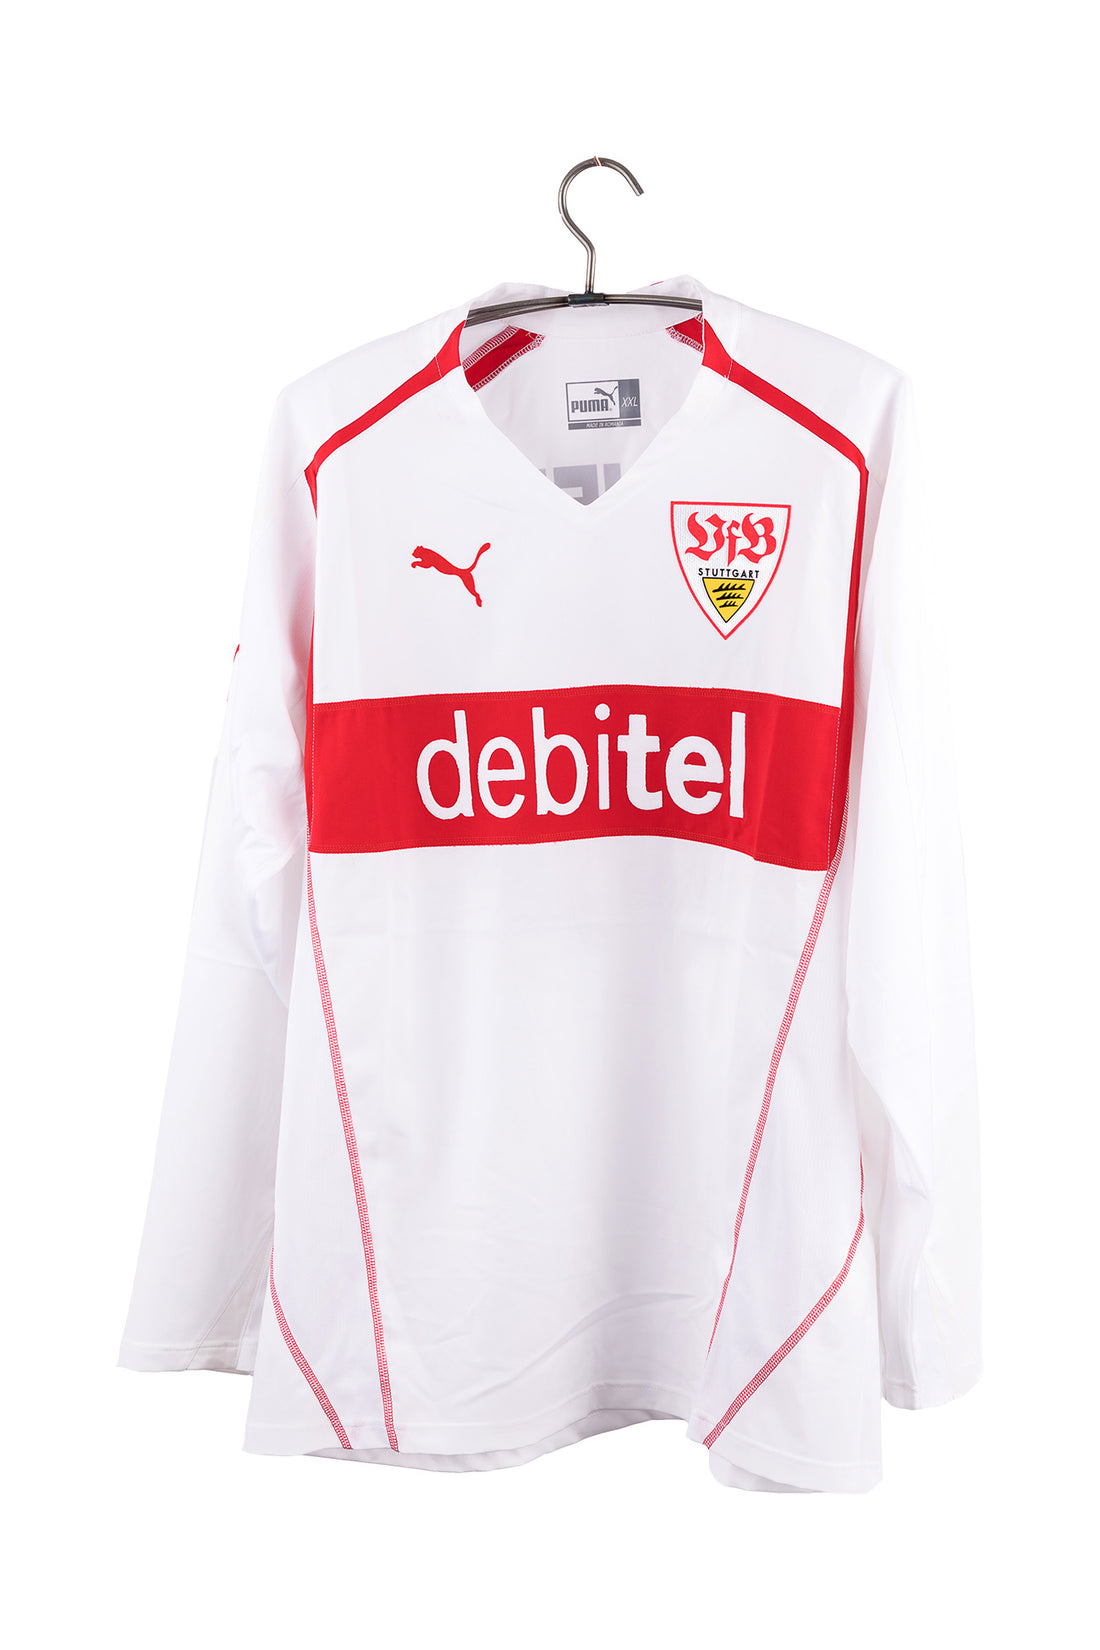 Stuttgart 2004 - 2005 Match Issue Home Football Shirt #17 Delpierre